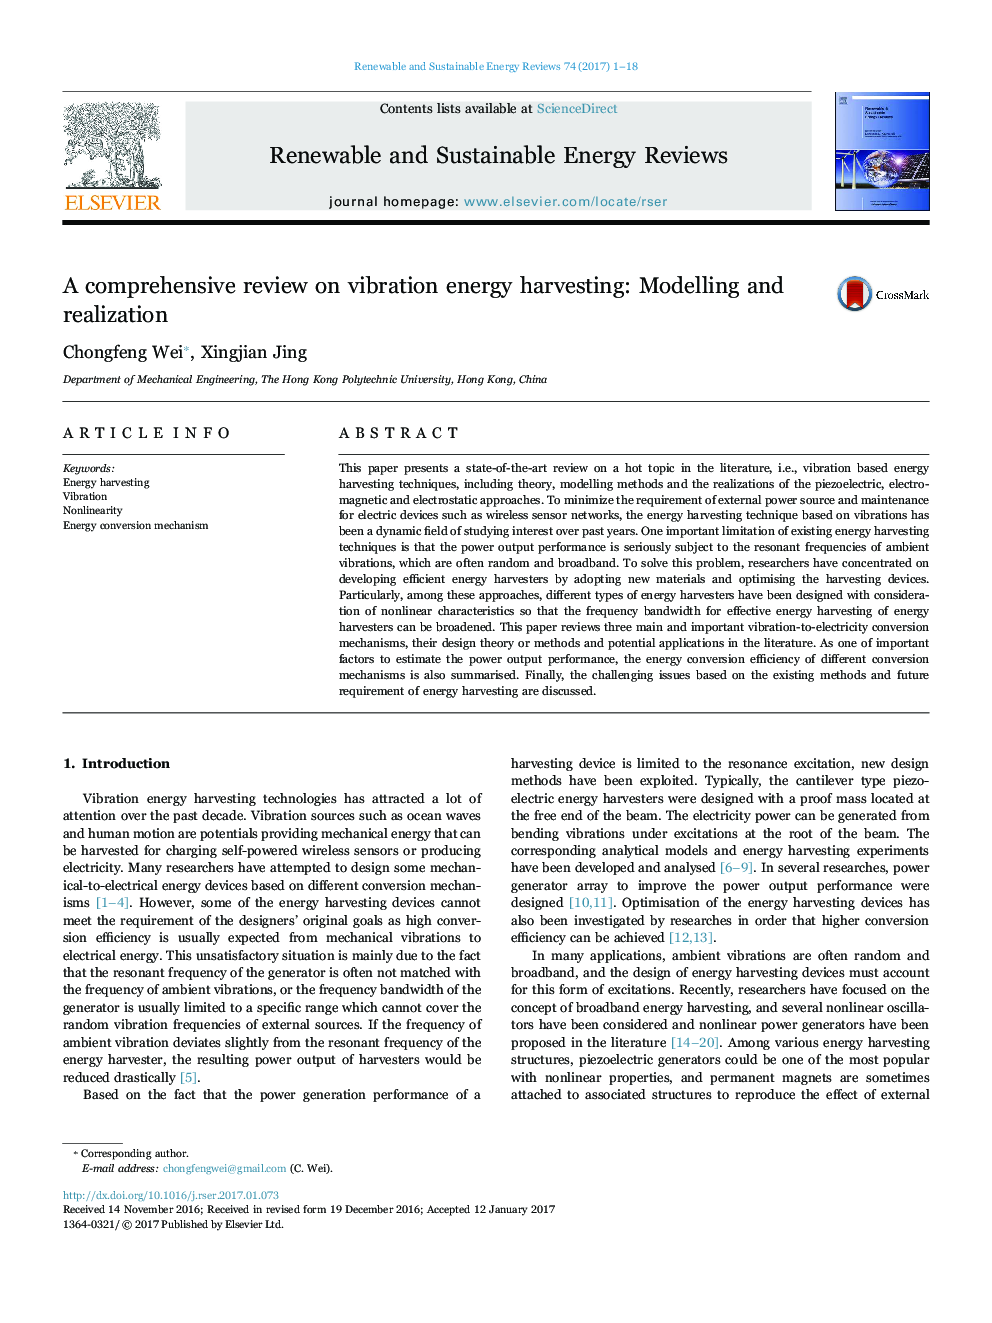 بررسی جامع برداشت انرژی ارتعاش: مدل سازی و تحقق 